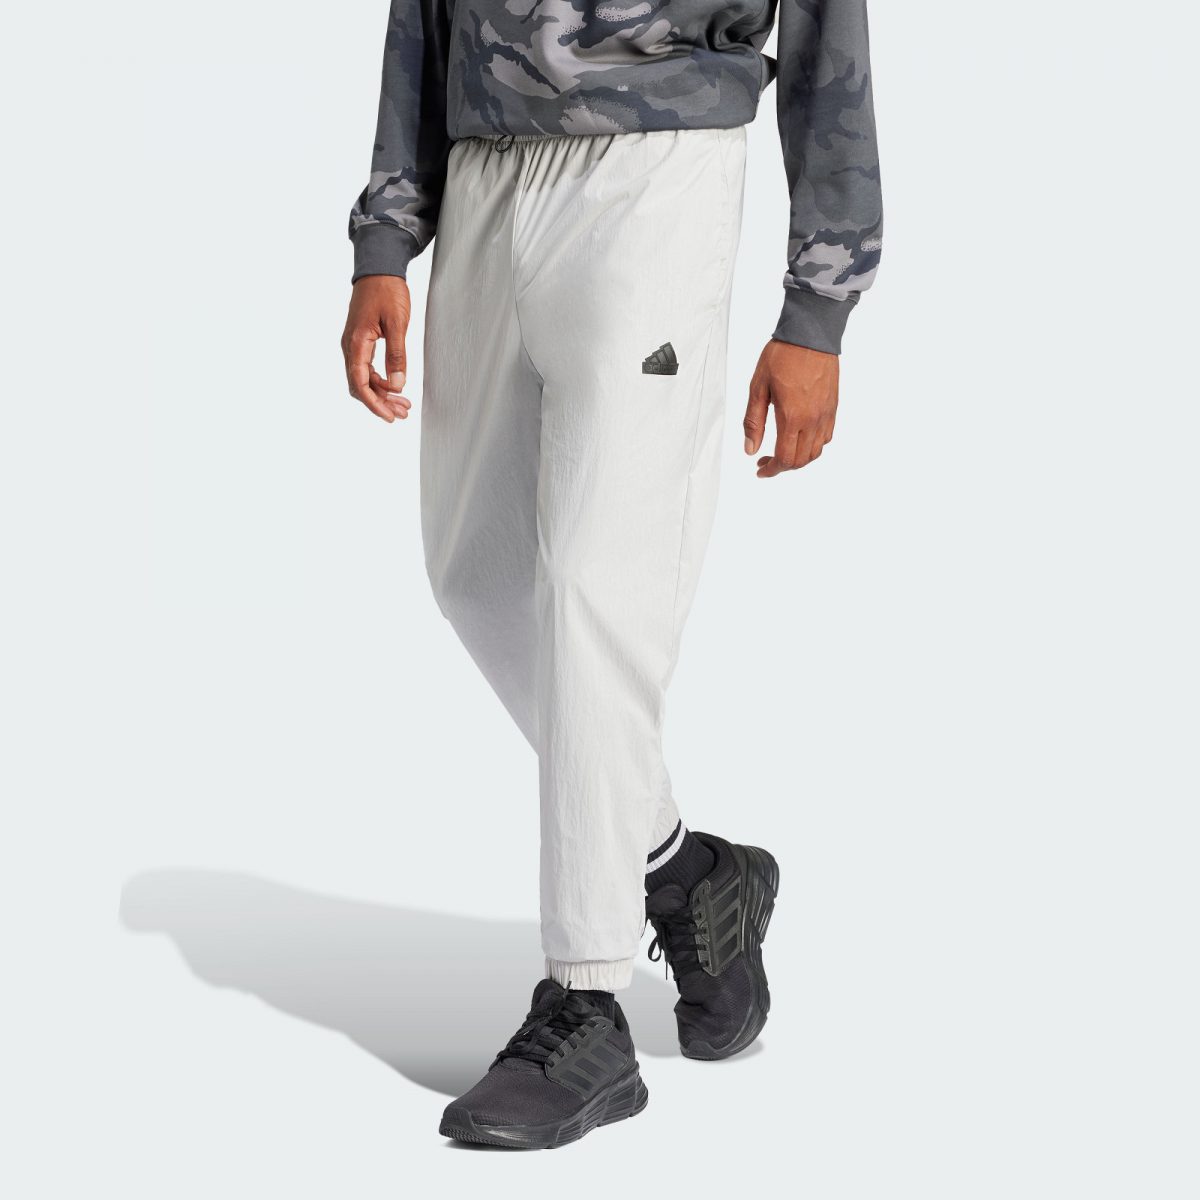 Мужские брюки adidas CITY ESCAPE PANTS серые фото